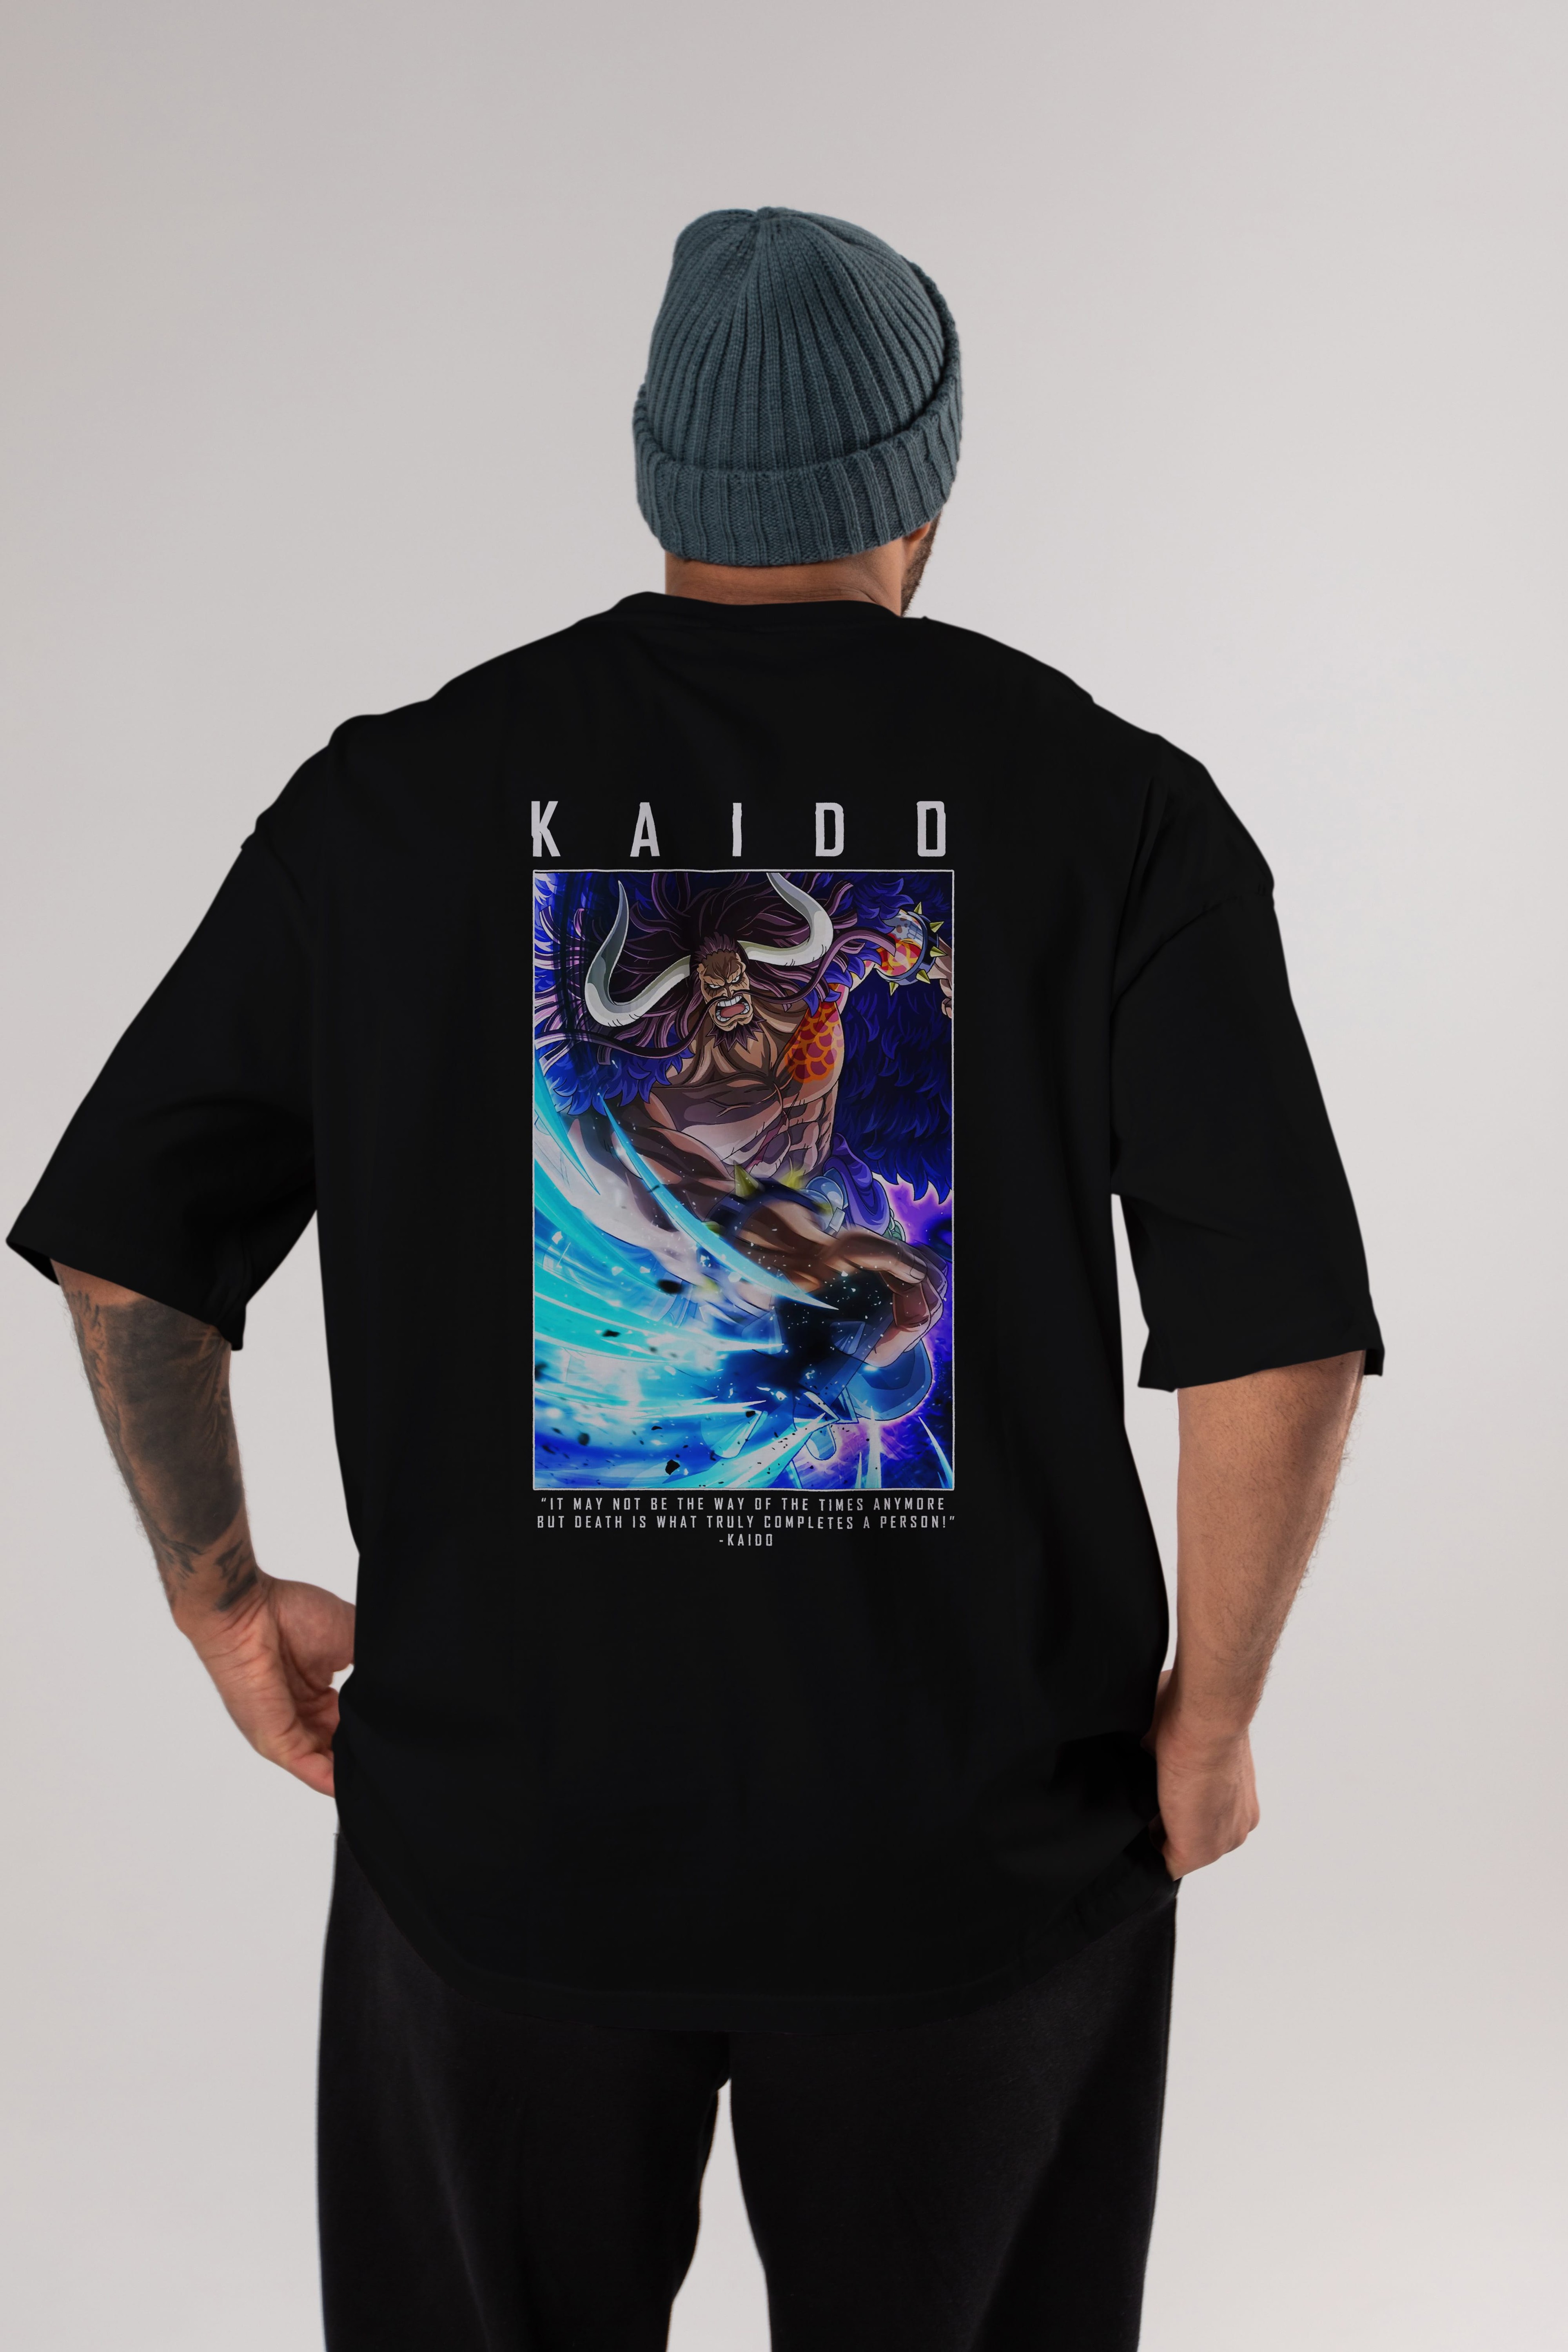 Kaido 2 Anime Arka Baskılı Oversize t-shirt Erkek Kadın Unisex %100 pamuk tişort